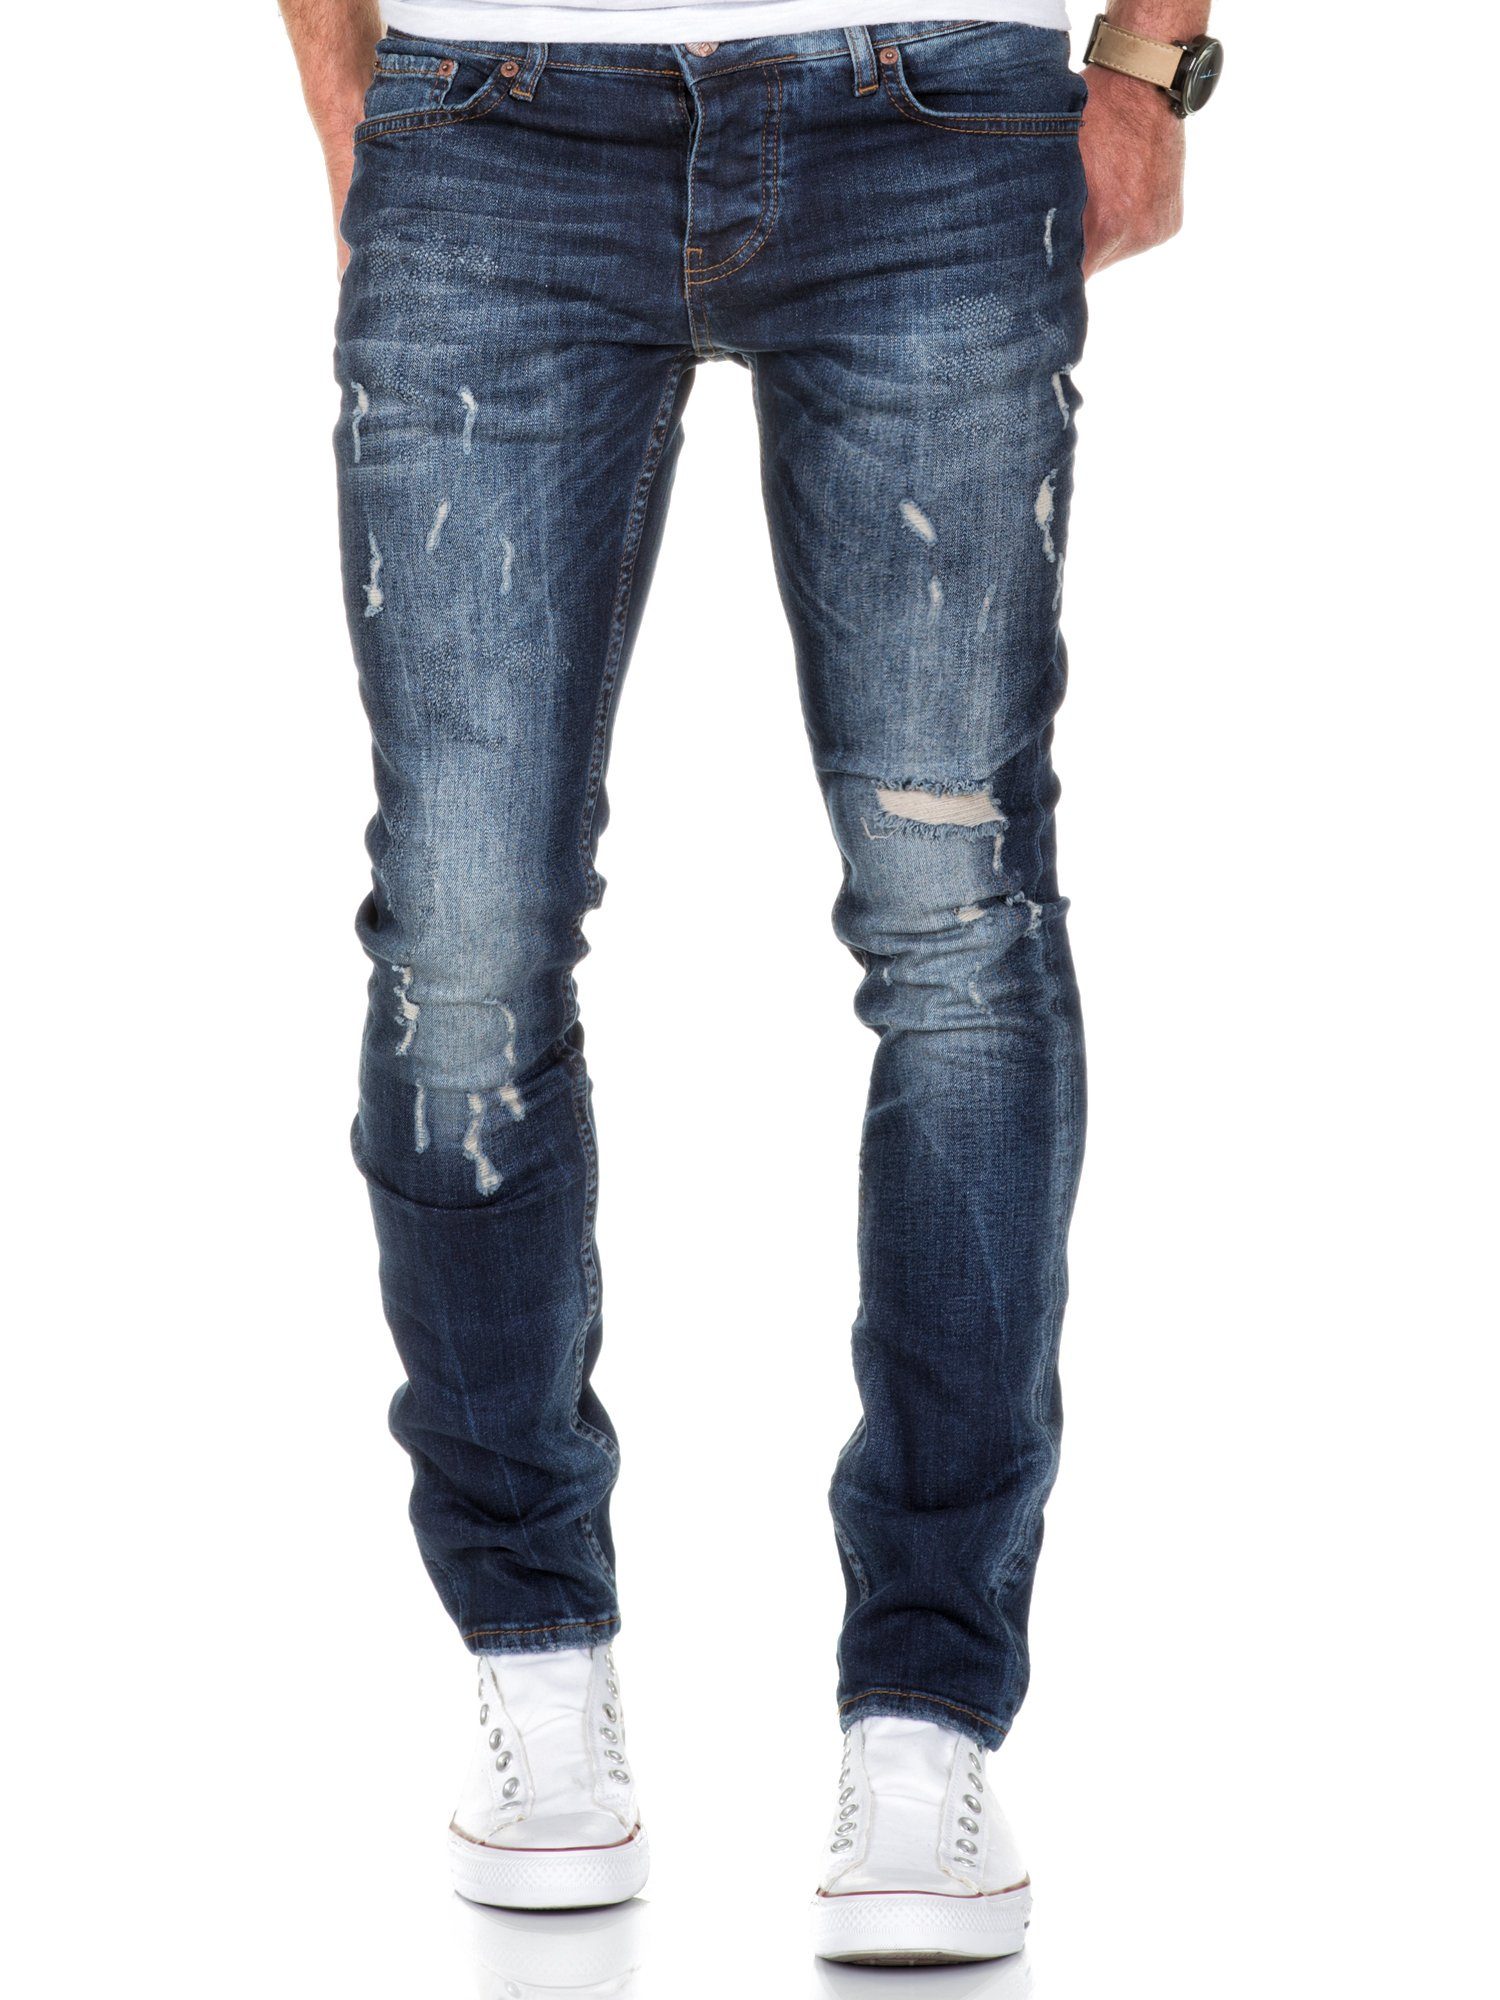 Amaci&Sons Slim-fit-Jeans FRESNO Slim Jeans Hose Destroyed Basic Fit Destroyed Dunkelblau Slim Herren Denim Regular